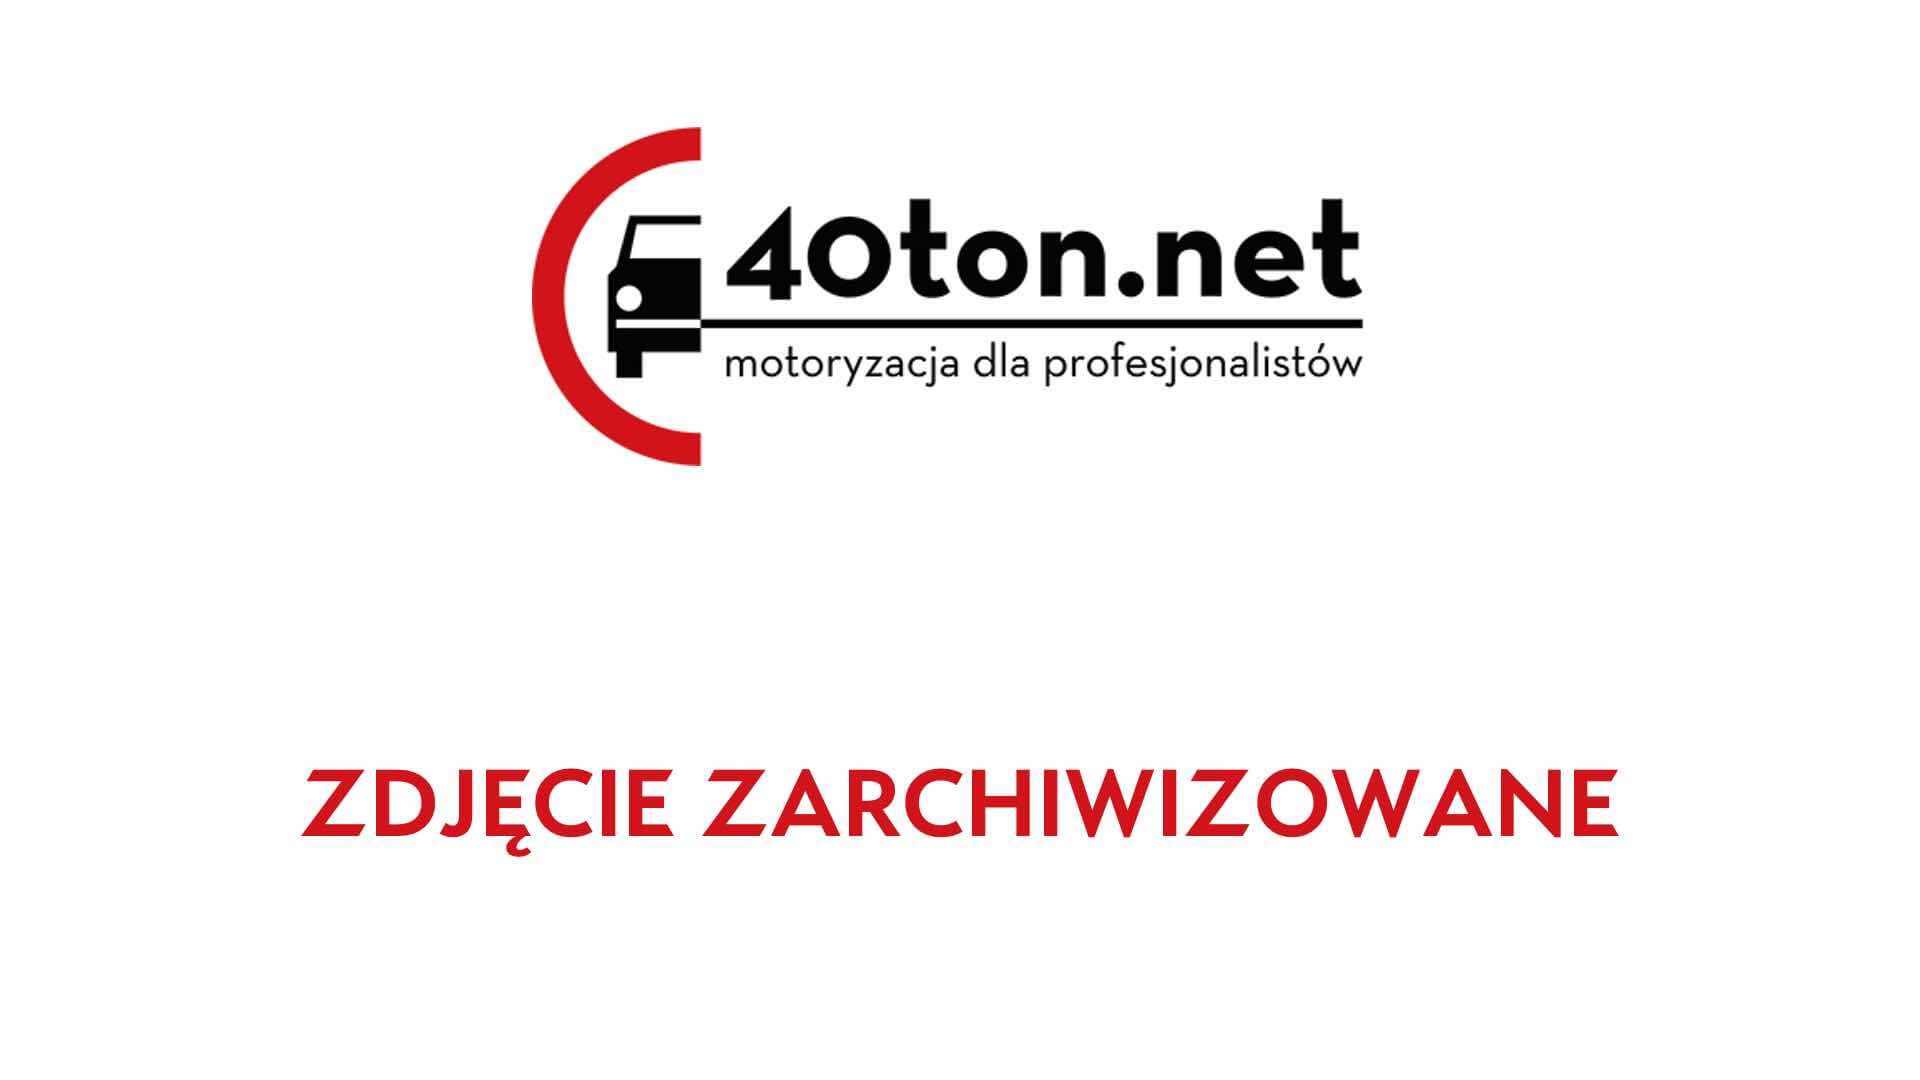 witd_poznan_daily_sprzet_agd